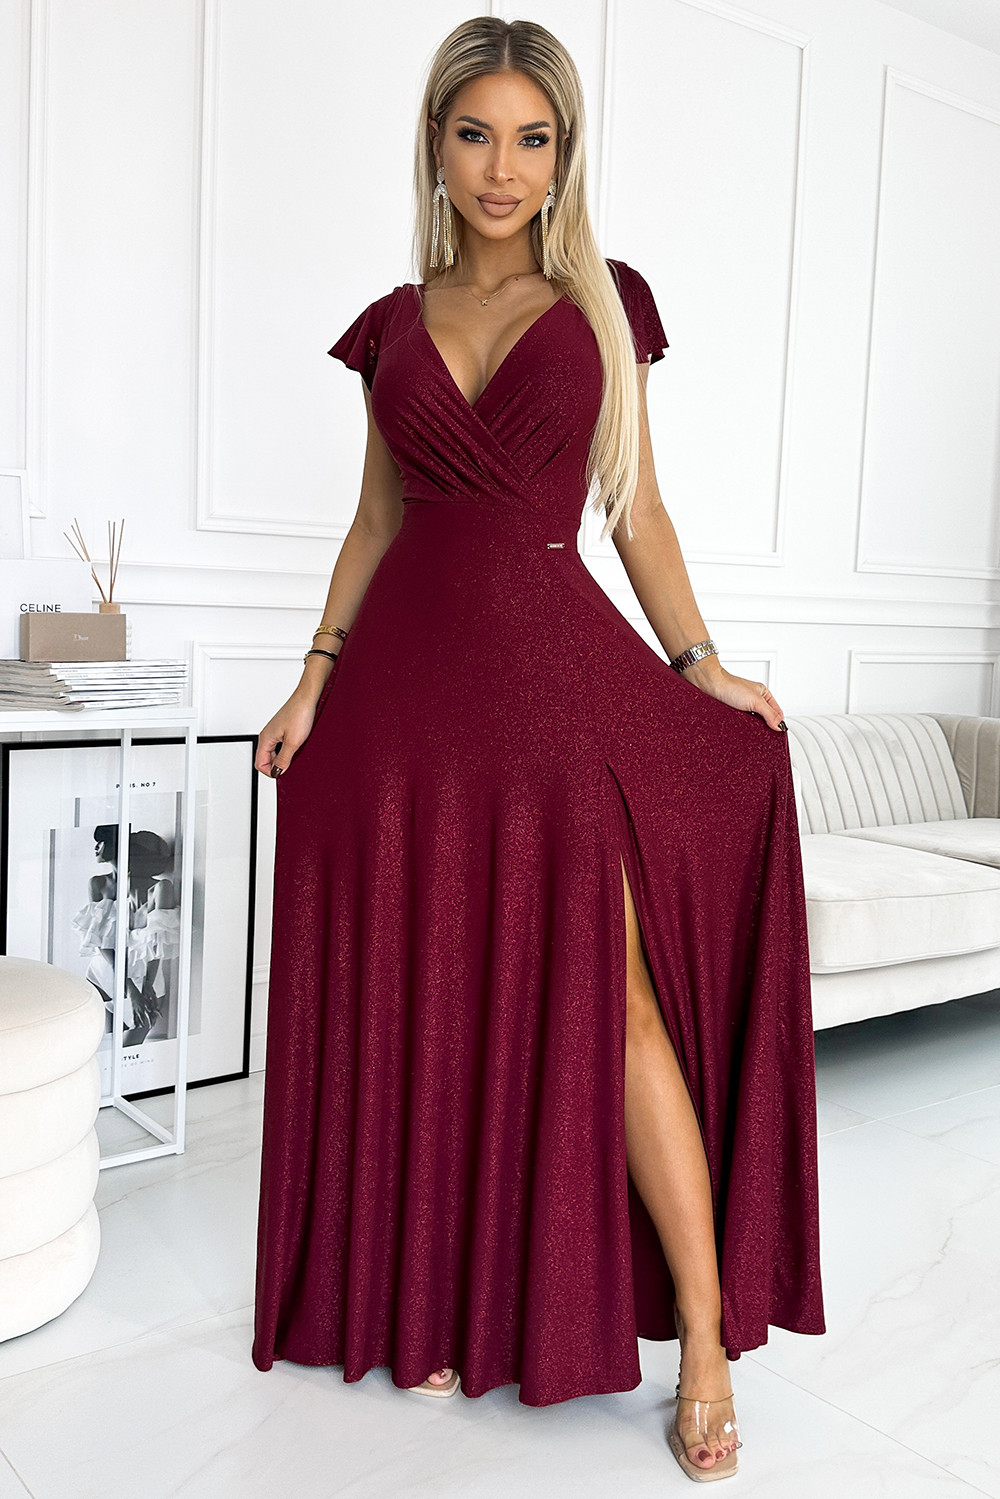 CRYSTAL - Dlouhé lesklé dámské šaty ve vínové bordó barvě s výstřihem 411-8 XL